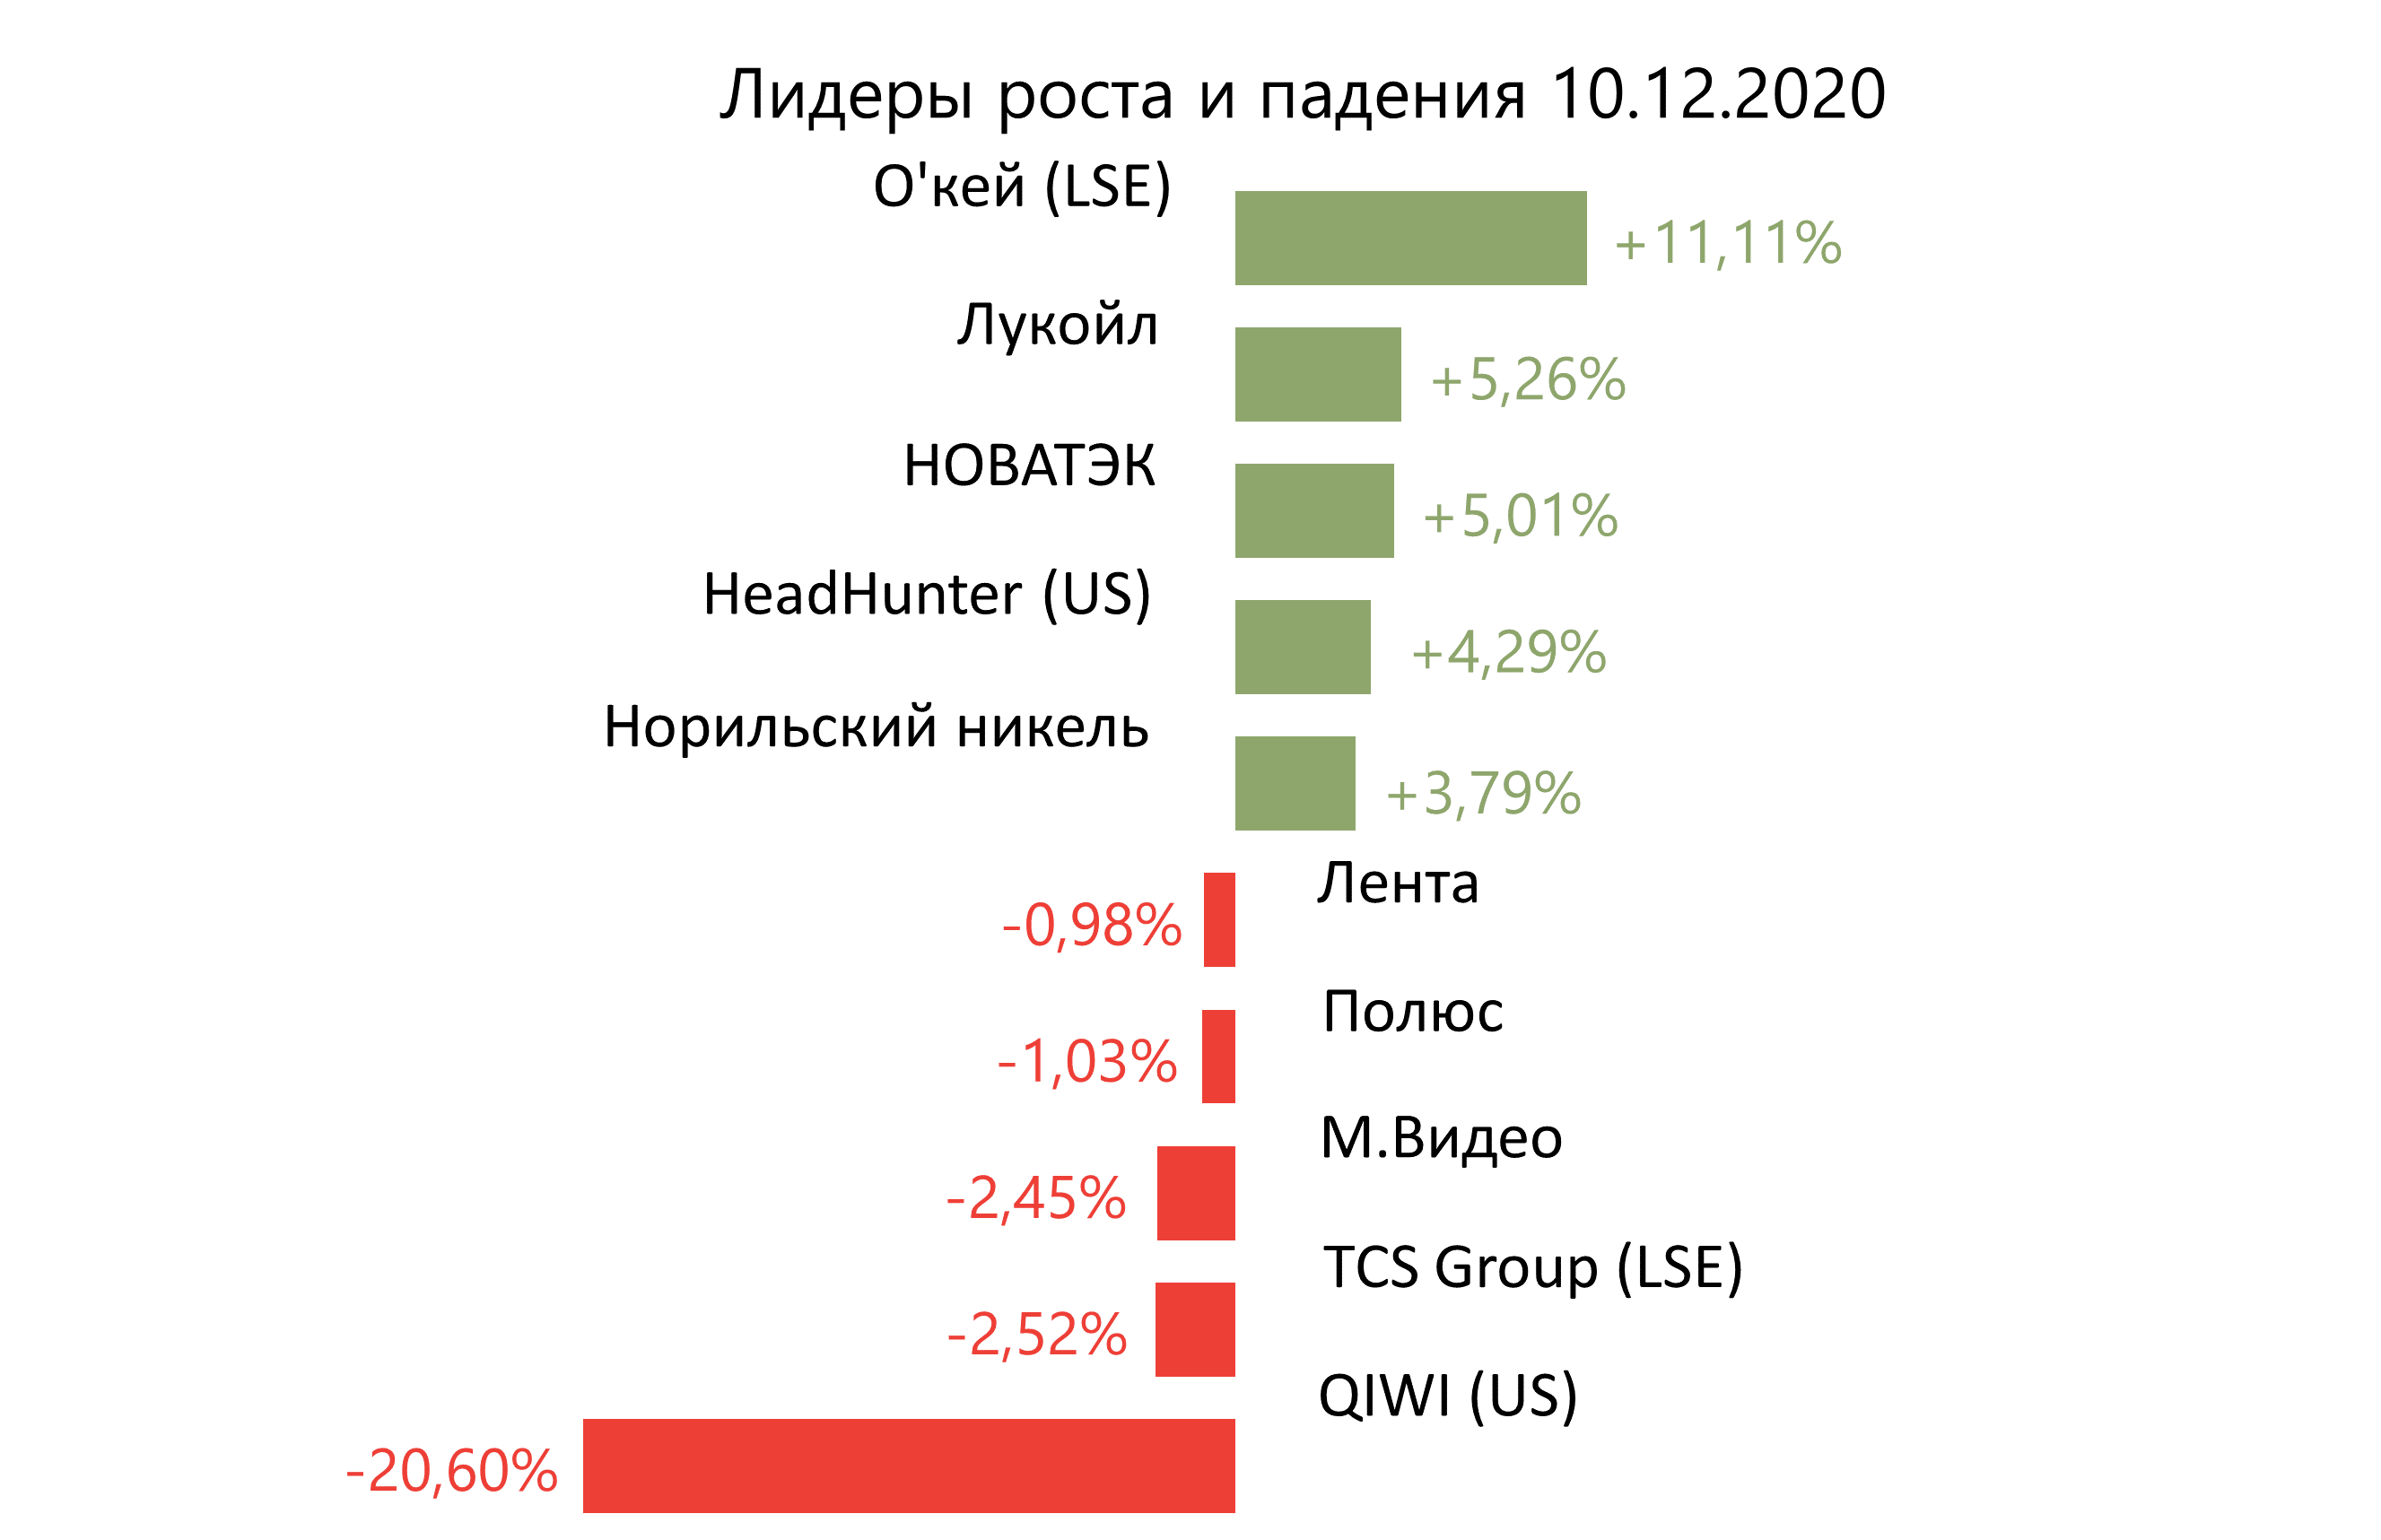 Лидеры роста и падения российского рынка н а 10 декабря